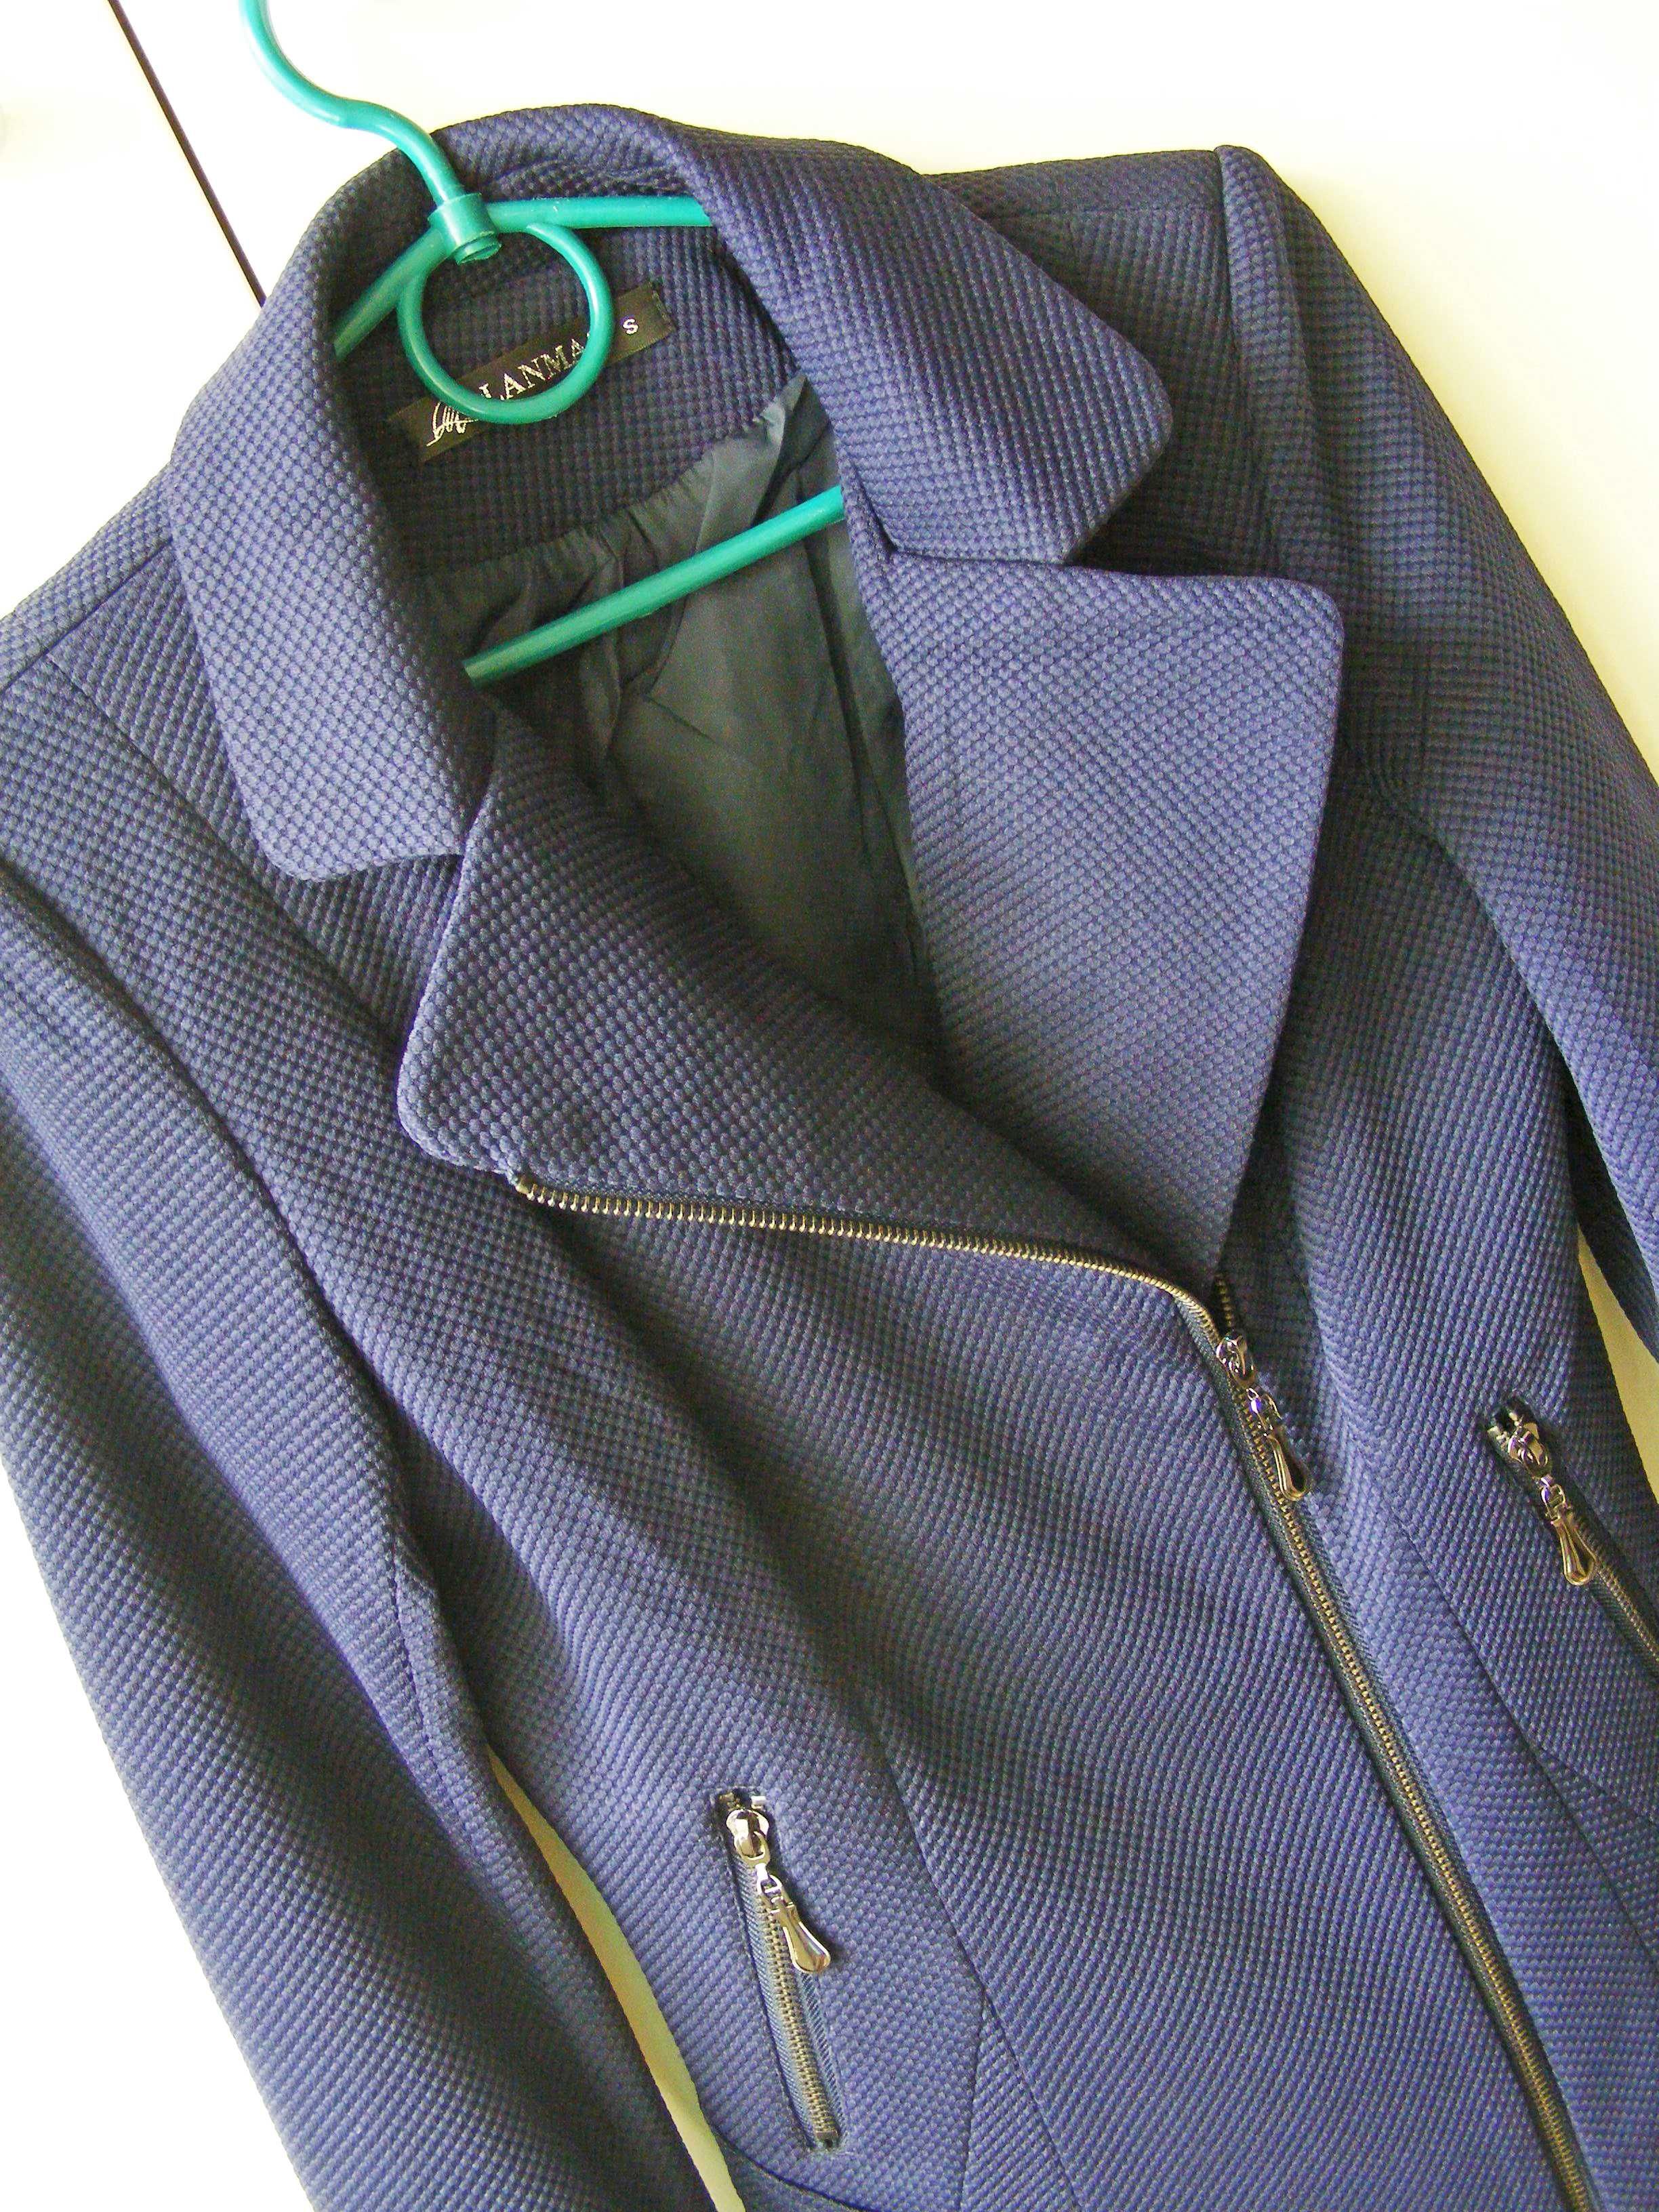 Пиджак жакет косуха Lanmas цвет индиго размер S для школы или в офис